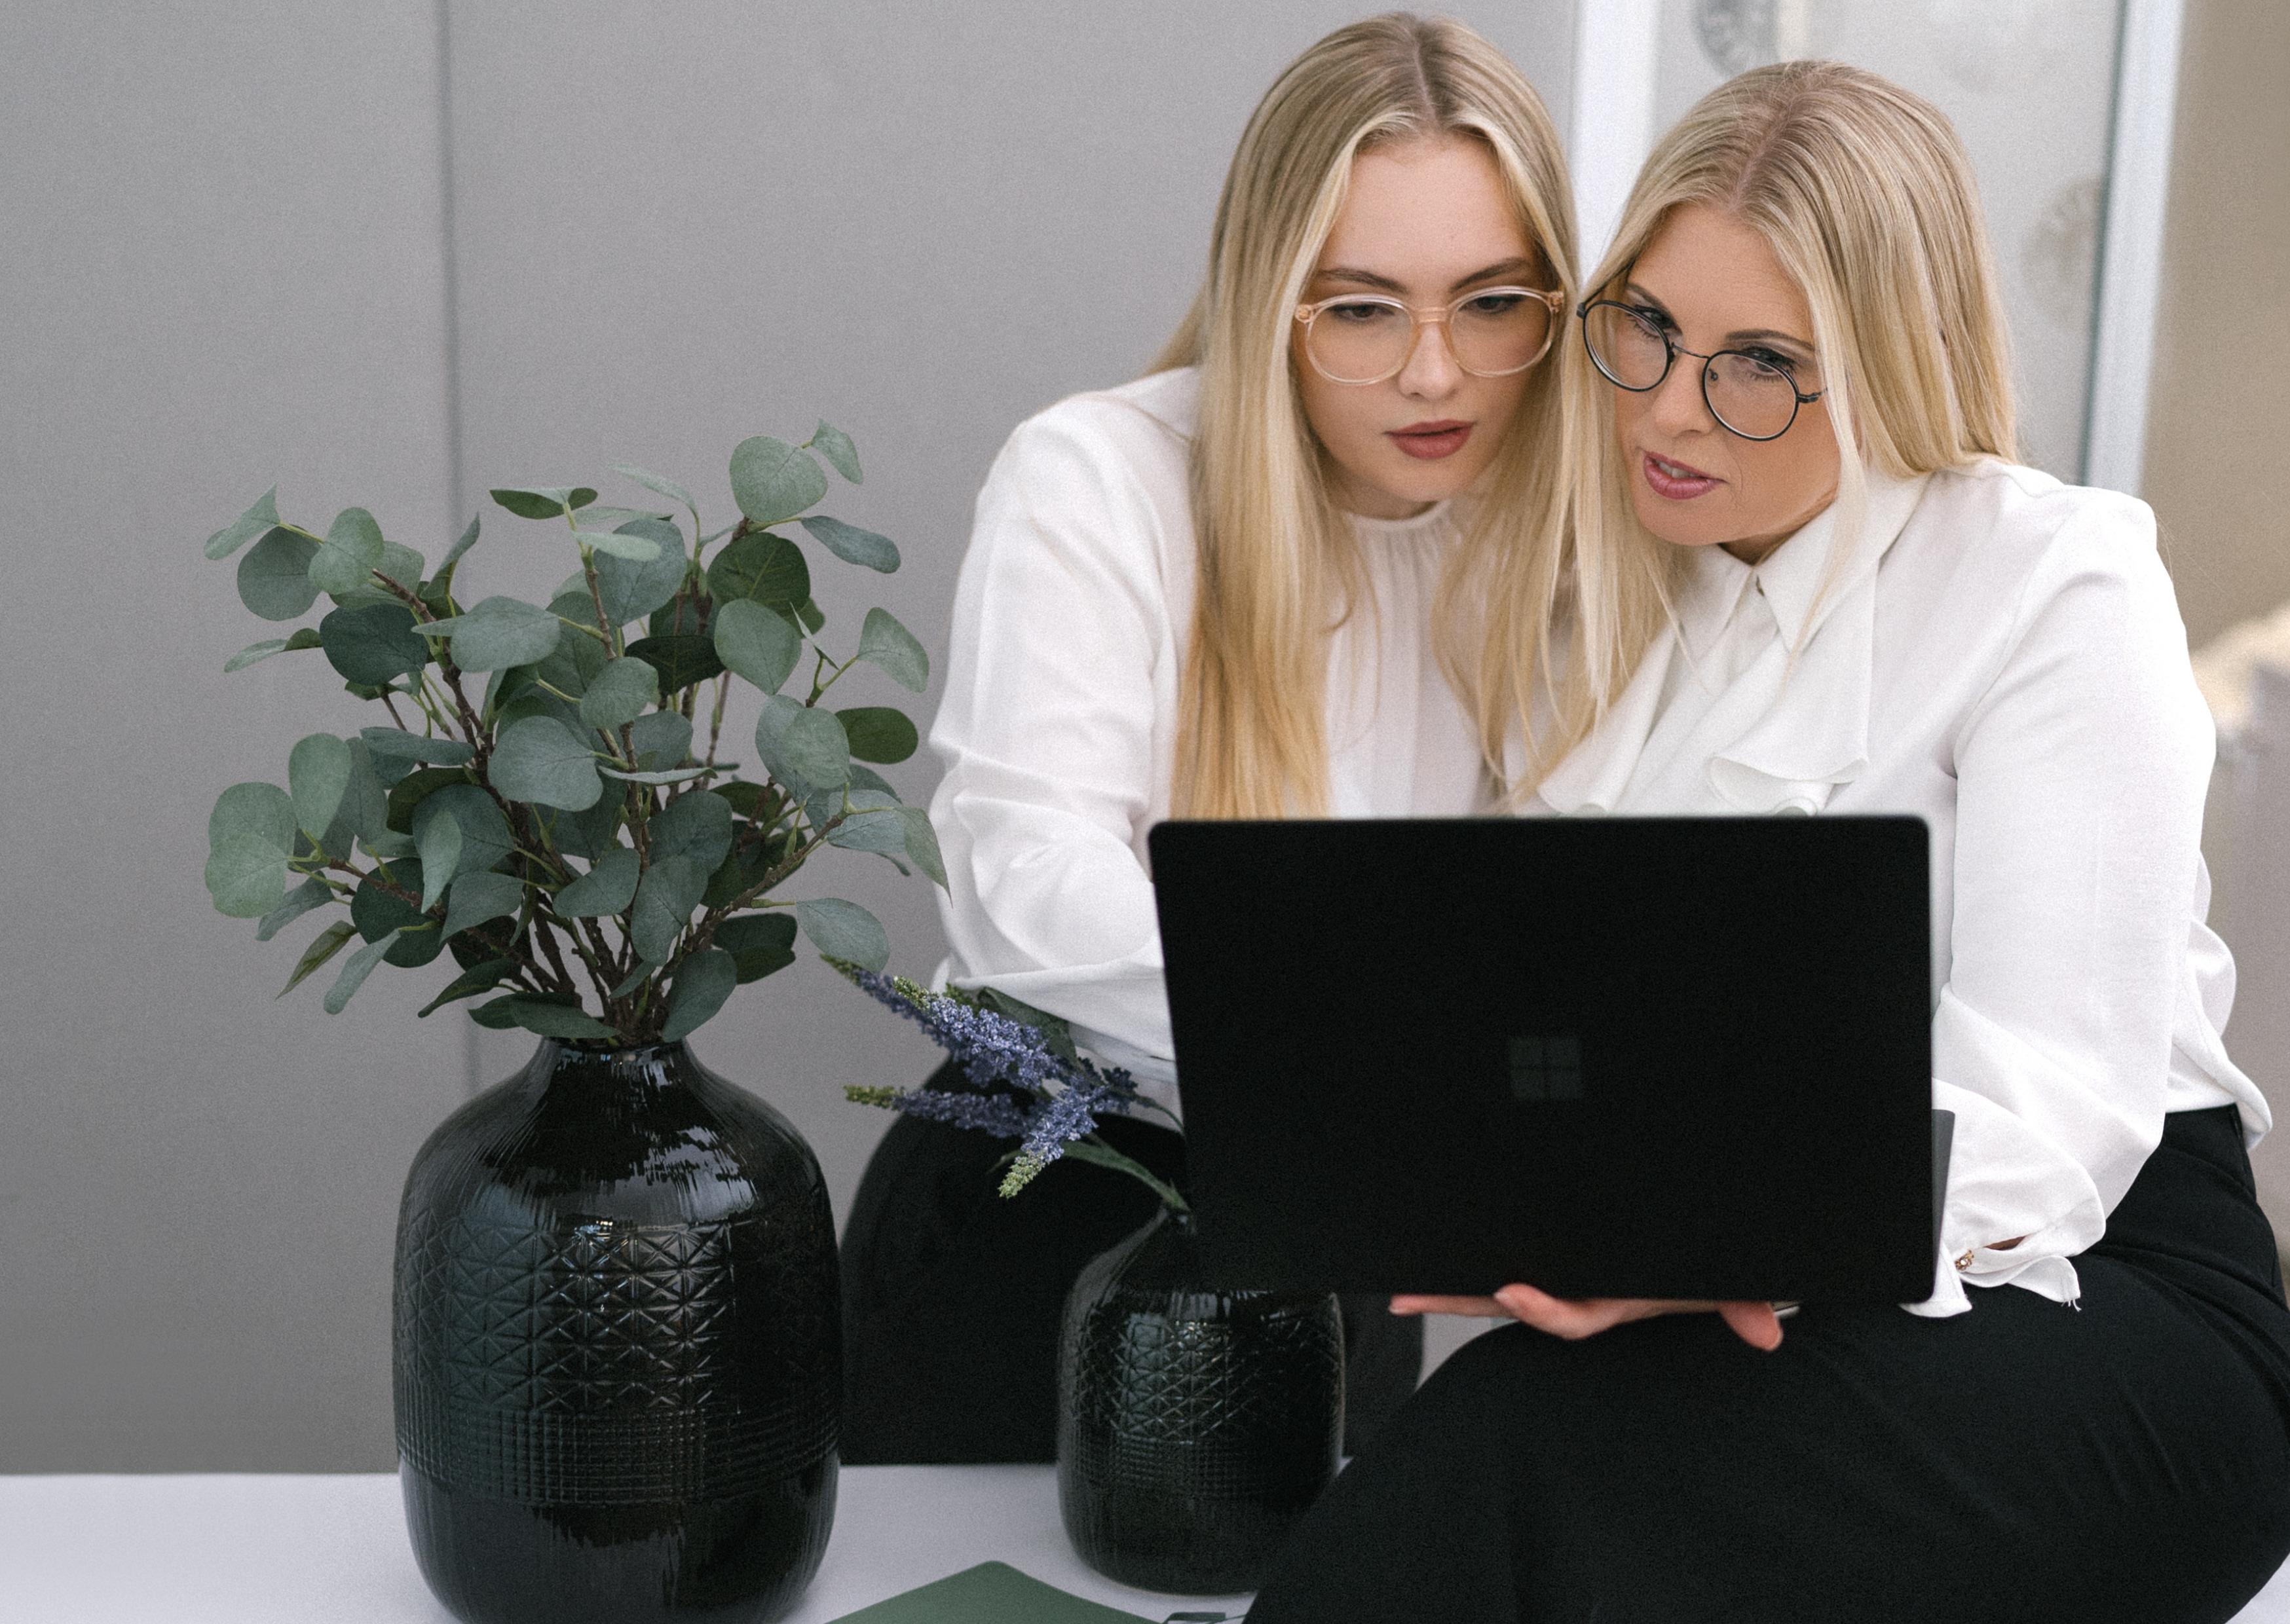 Zwei Personen die gemeinsam auf einen Laptop schauen bzw. damit arbeiten.